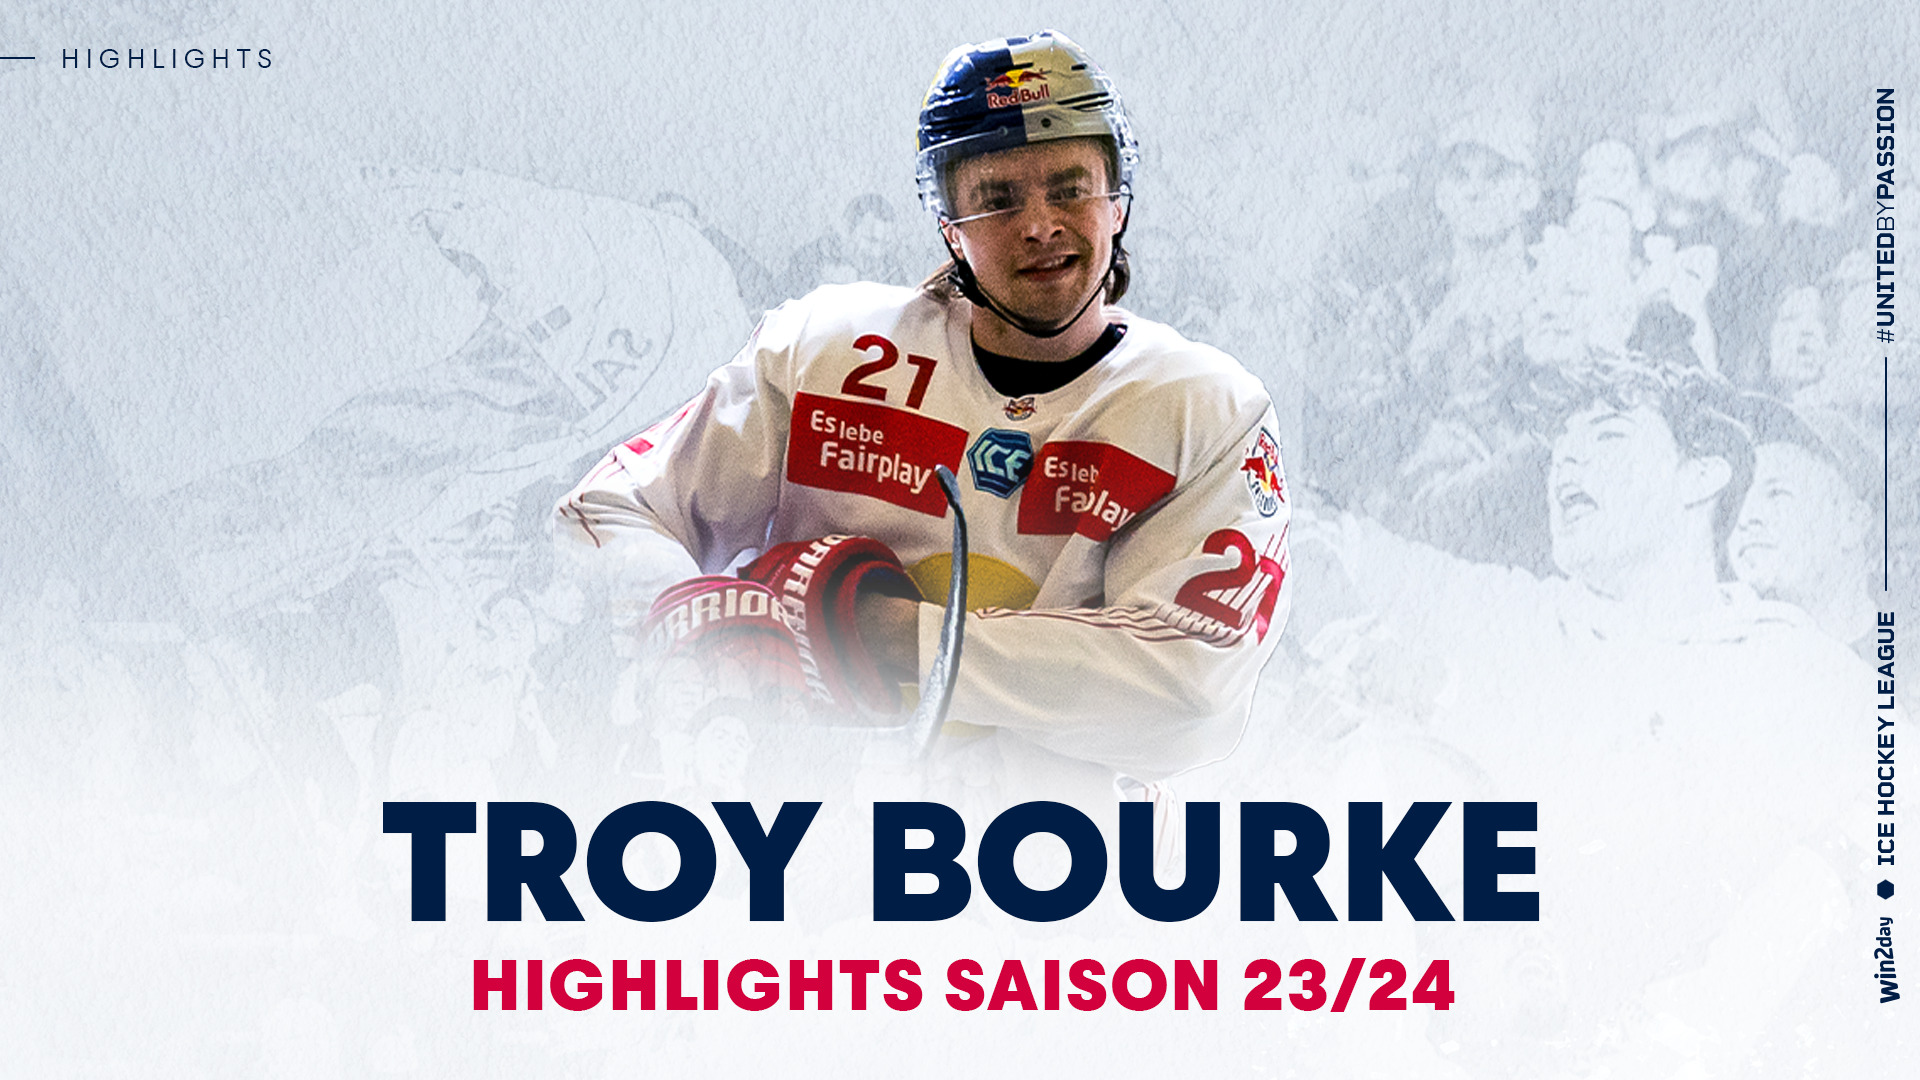 Troy Bourke: Die Highlights aus der Saison 23/24